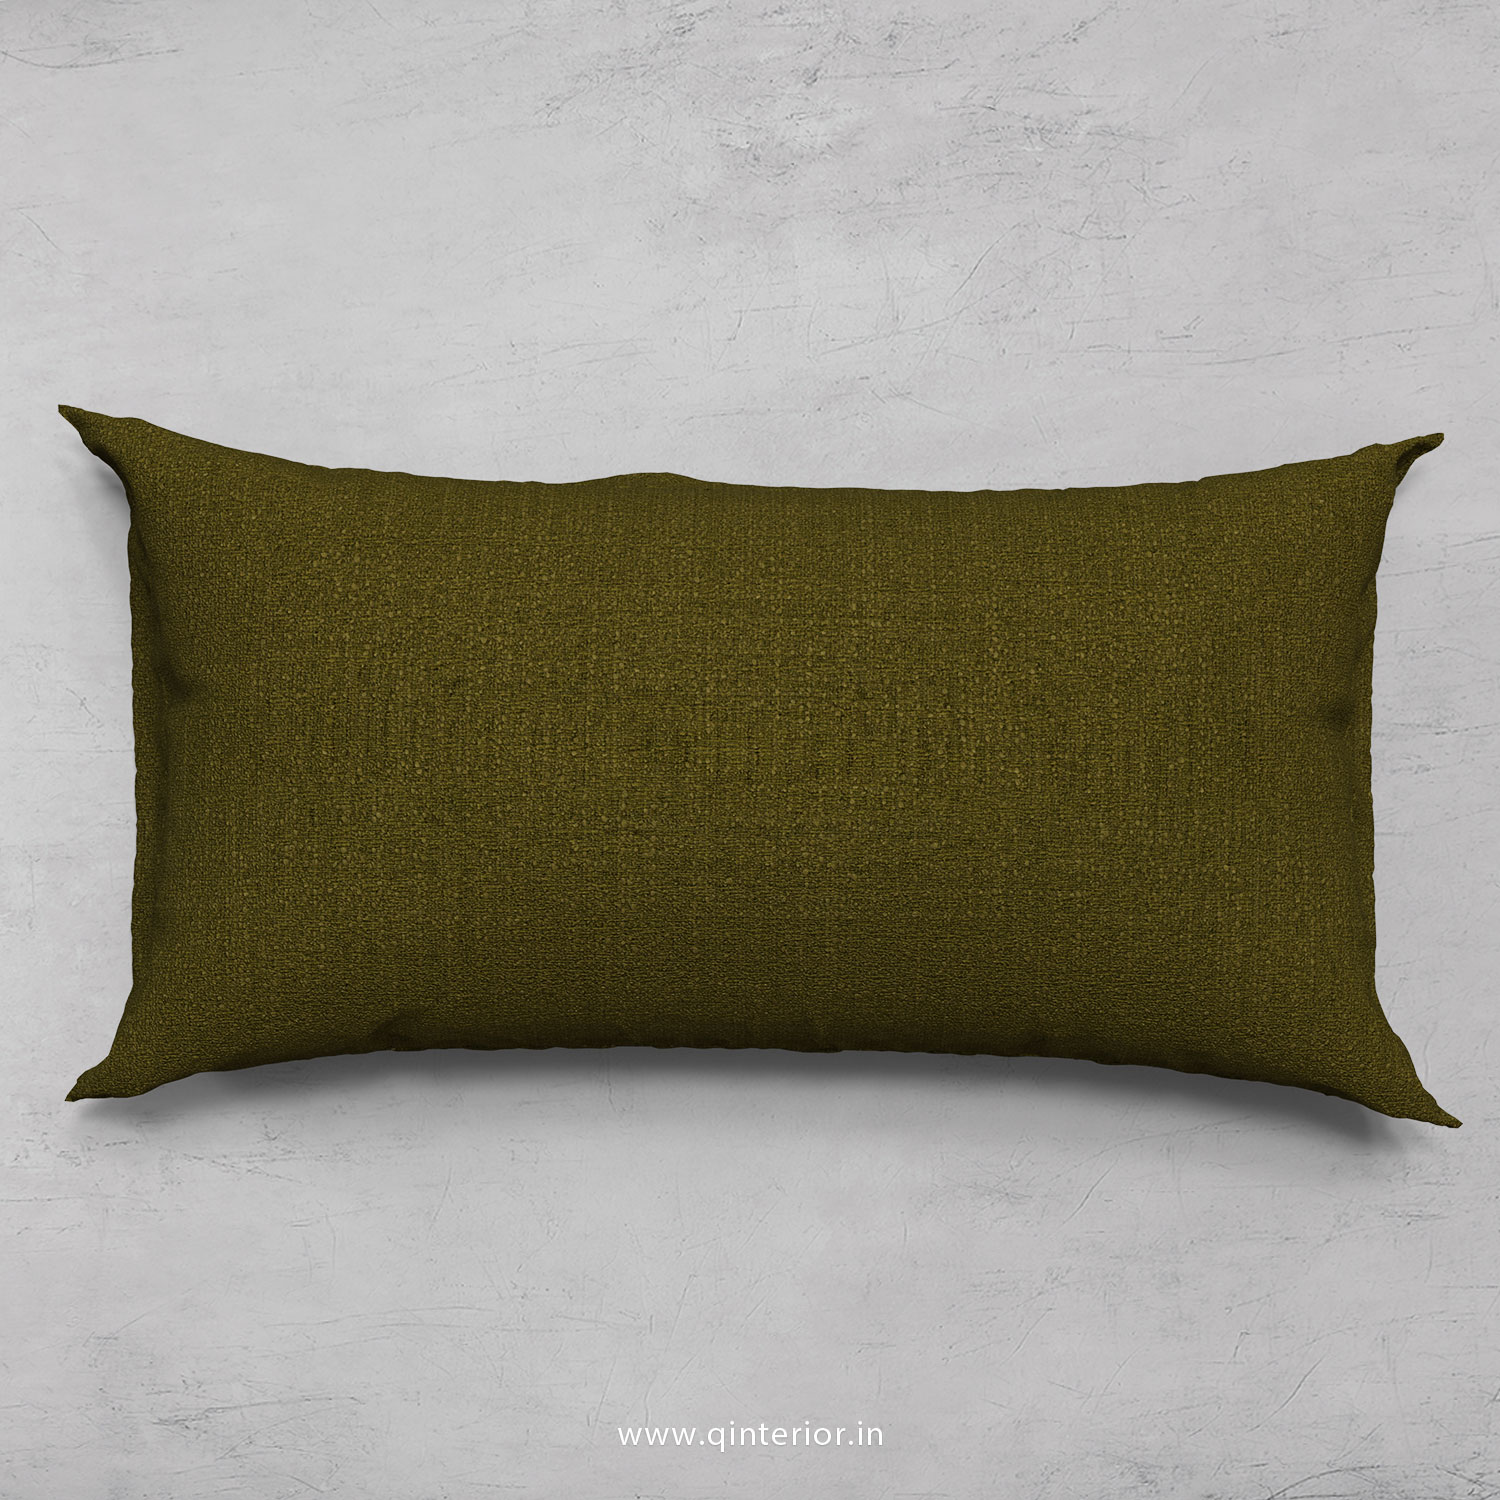 Cushion With Cushion Cover in Bargello - CUS002 BG03